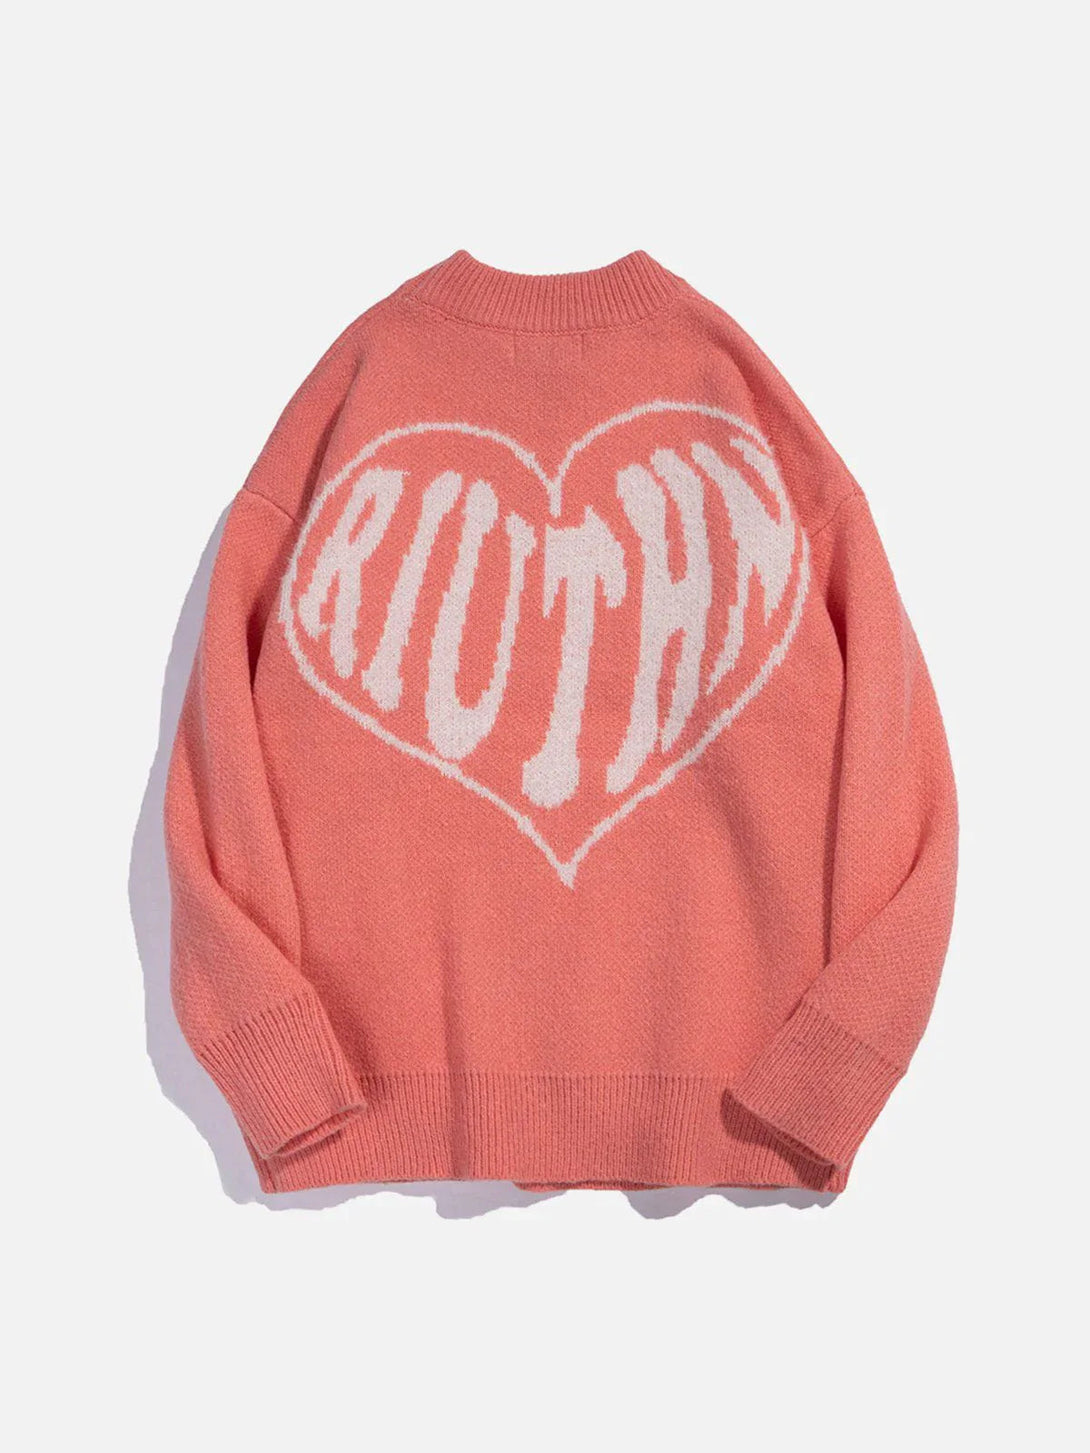 Majesda® - Heart Letters Pattern Sweater outfit ideas streetwear fashion